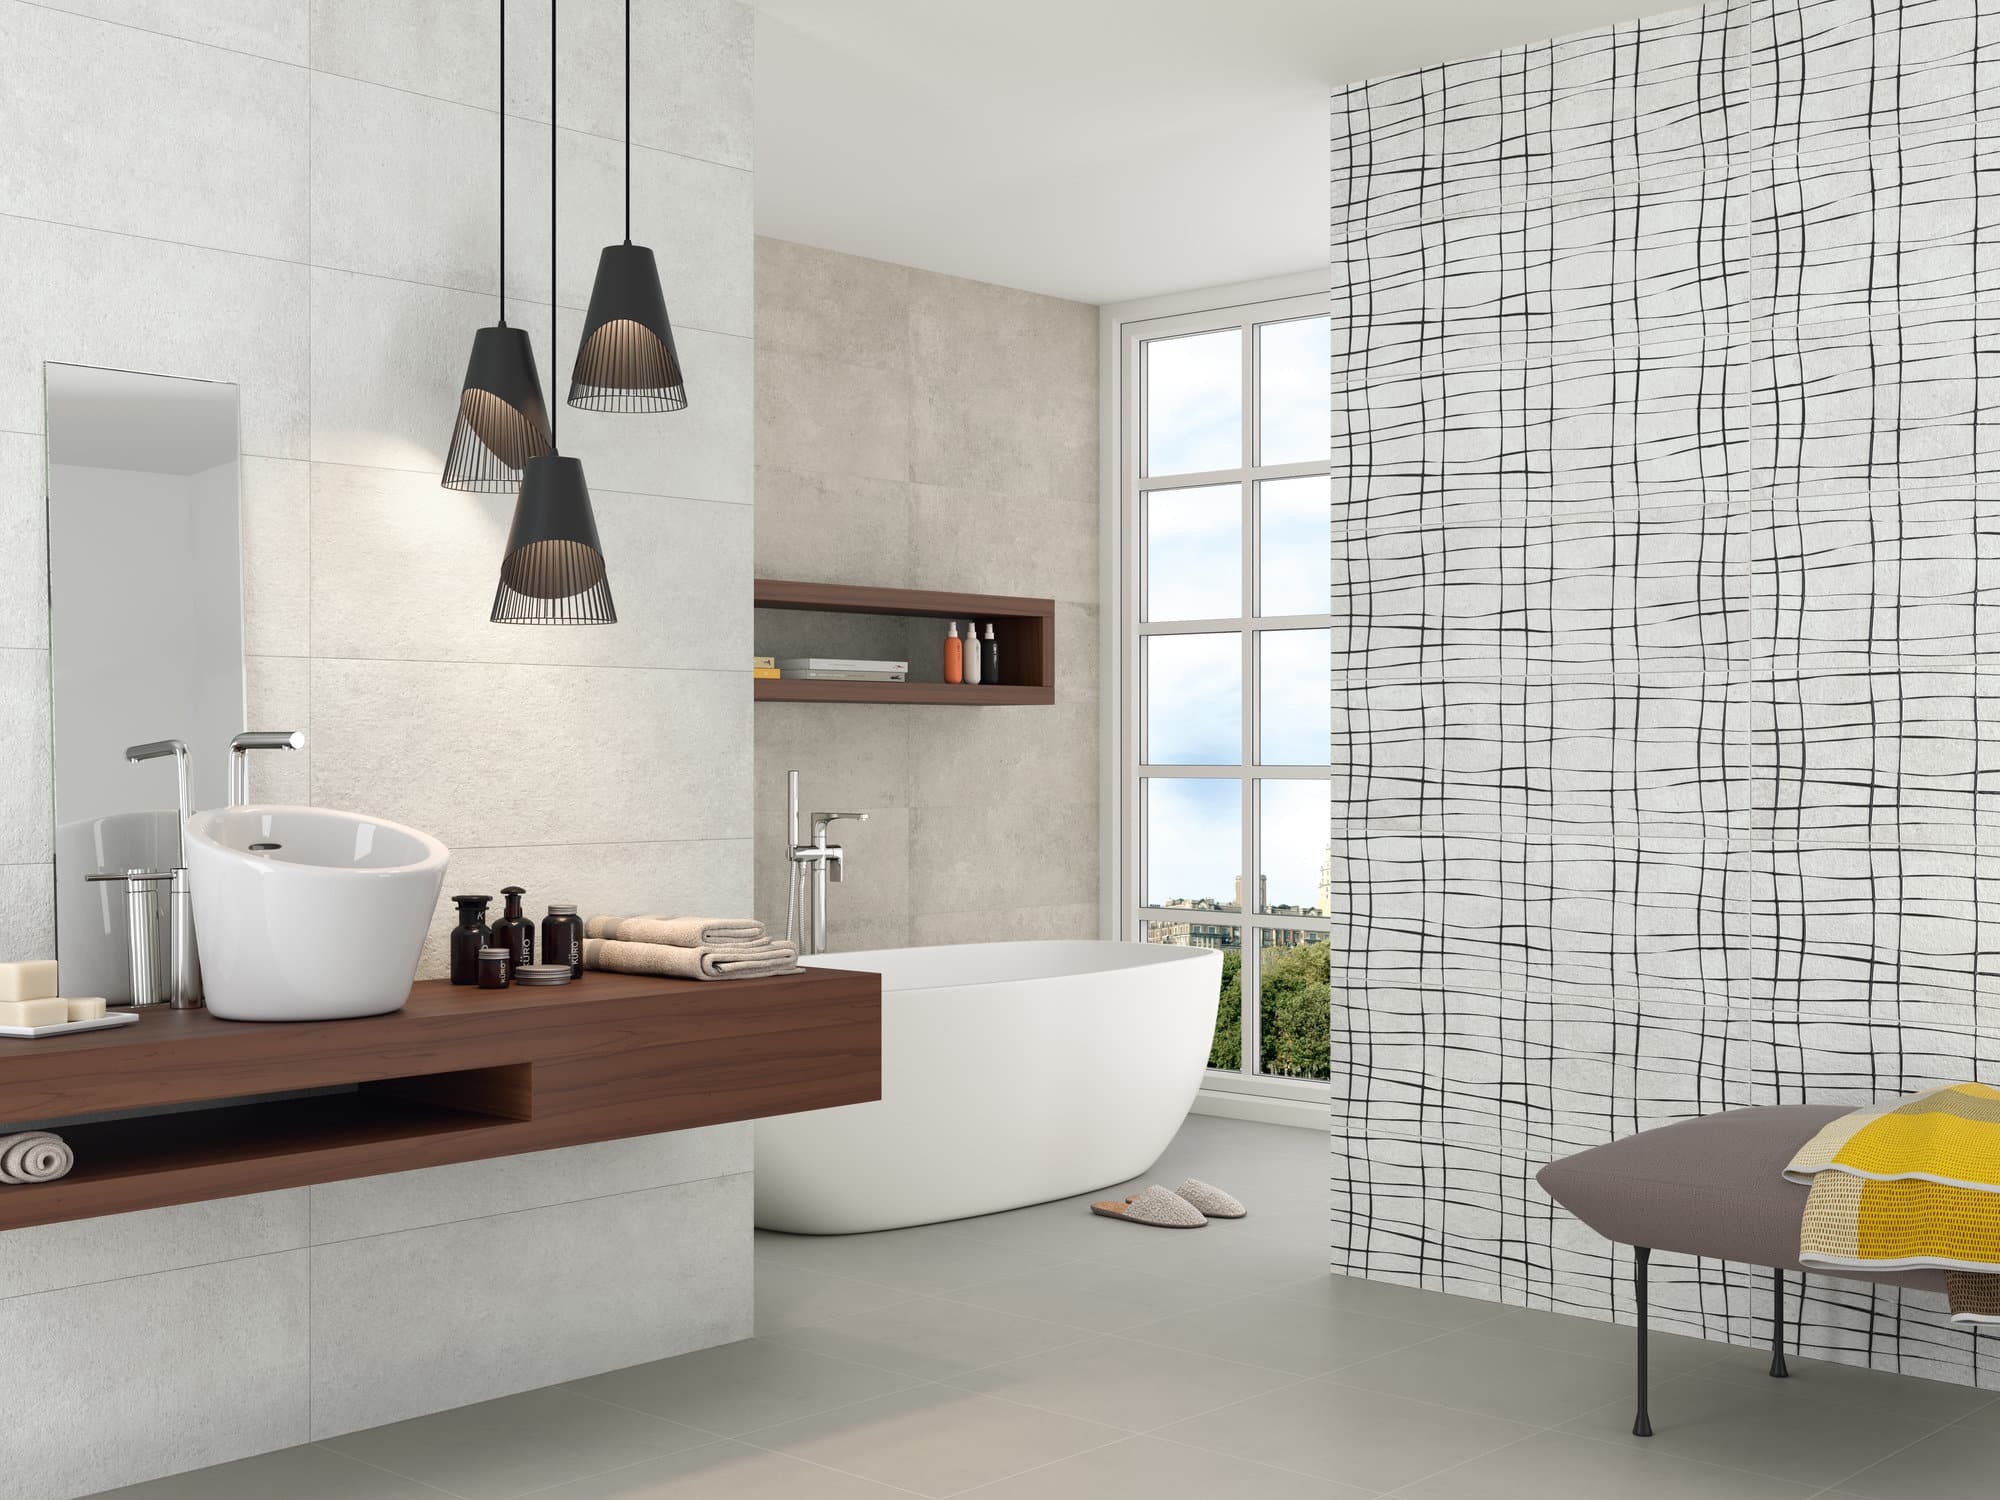 FLOOR CELAIN Porcelain Bathroom White Flooring tiles Sharon Woody Pearl Wall Tiles